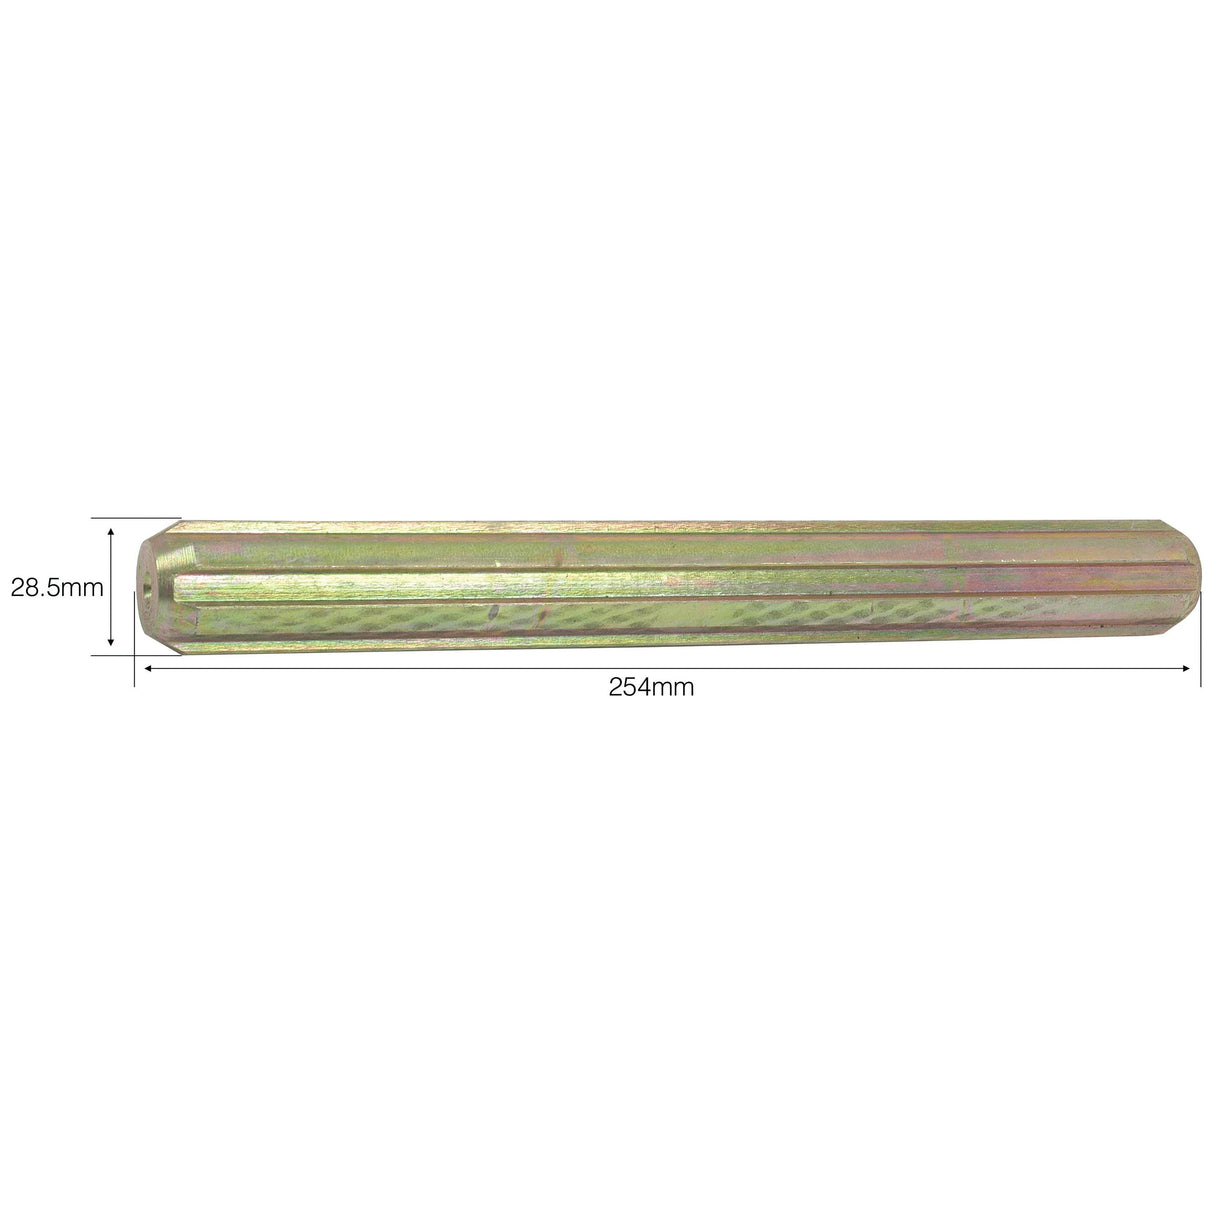 PTO Splined Shaft - Full Length - 1 1/8'' - 6 Spline, Length: 254mm. - S.282 - Farming Parts